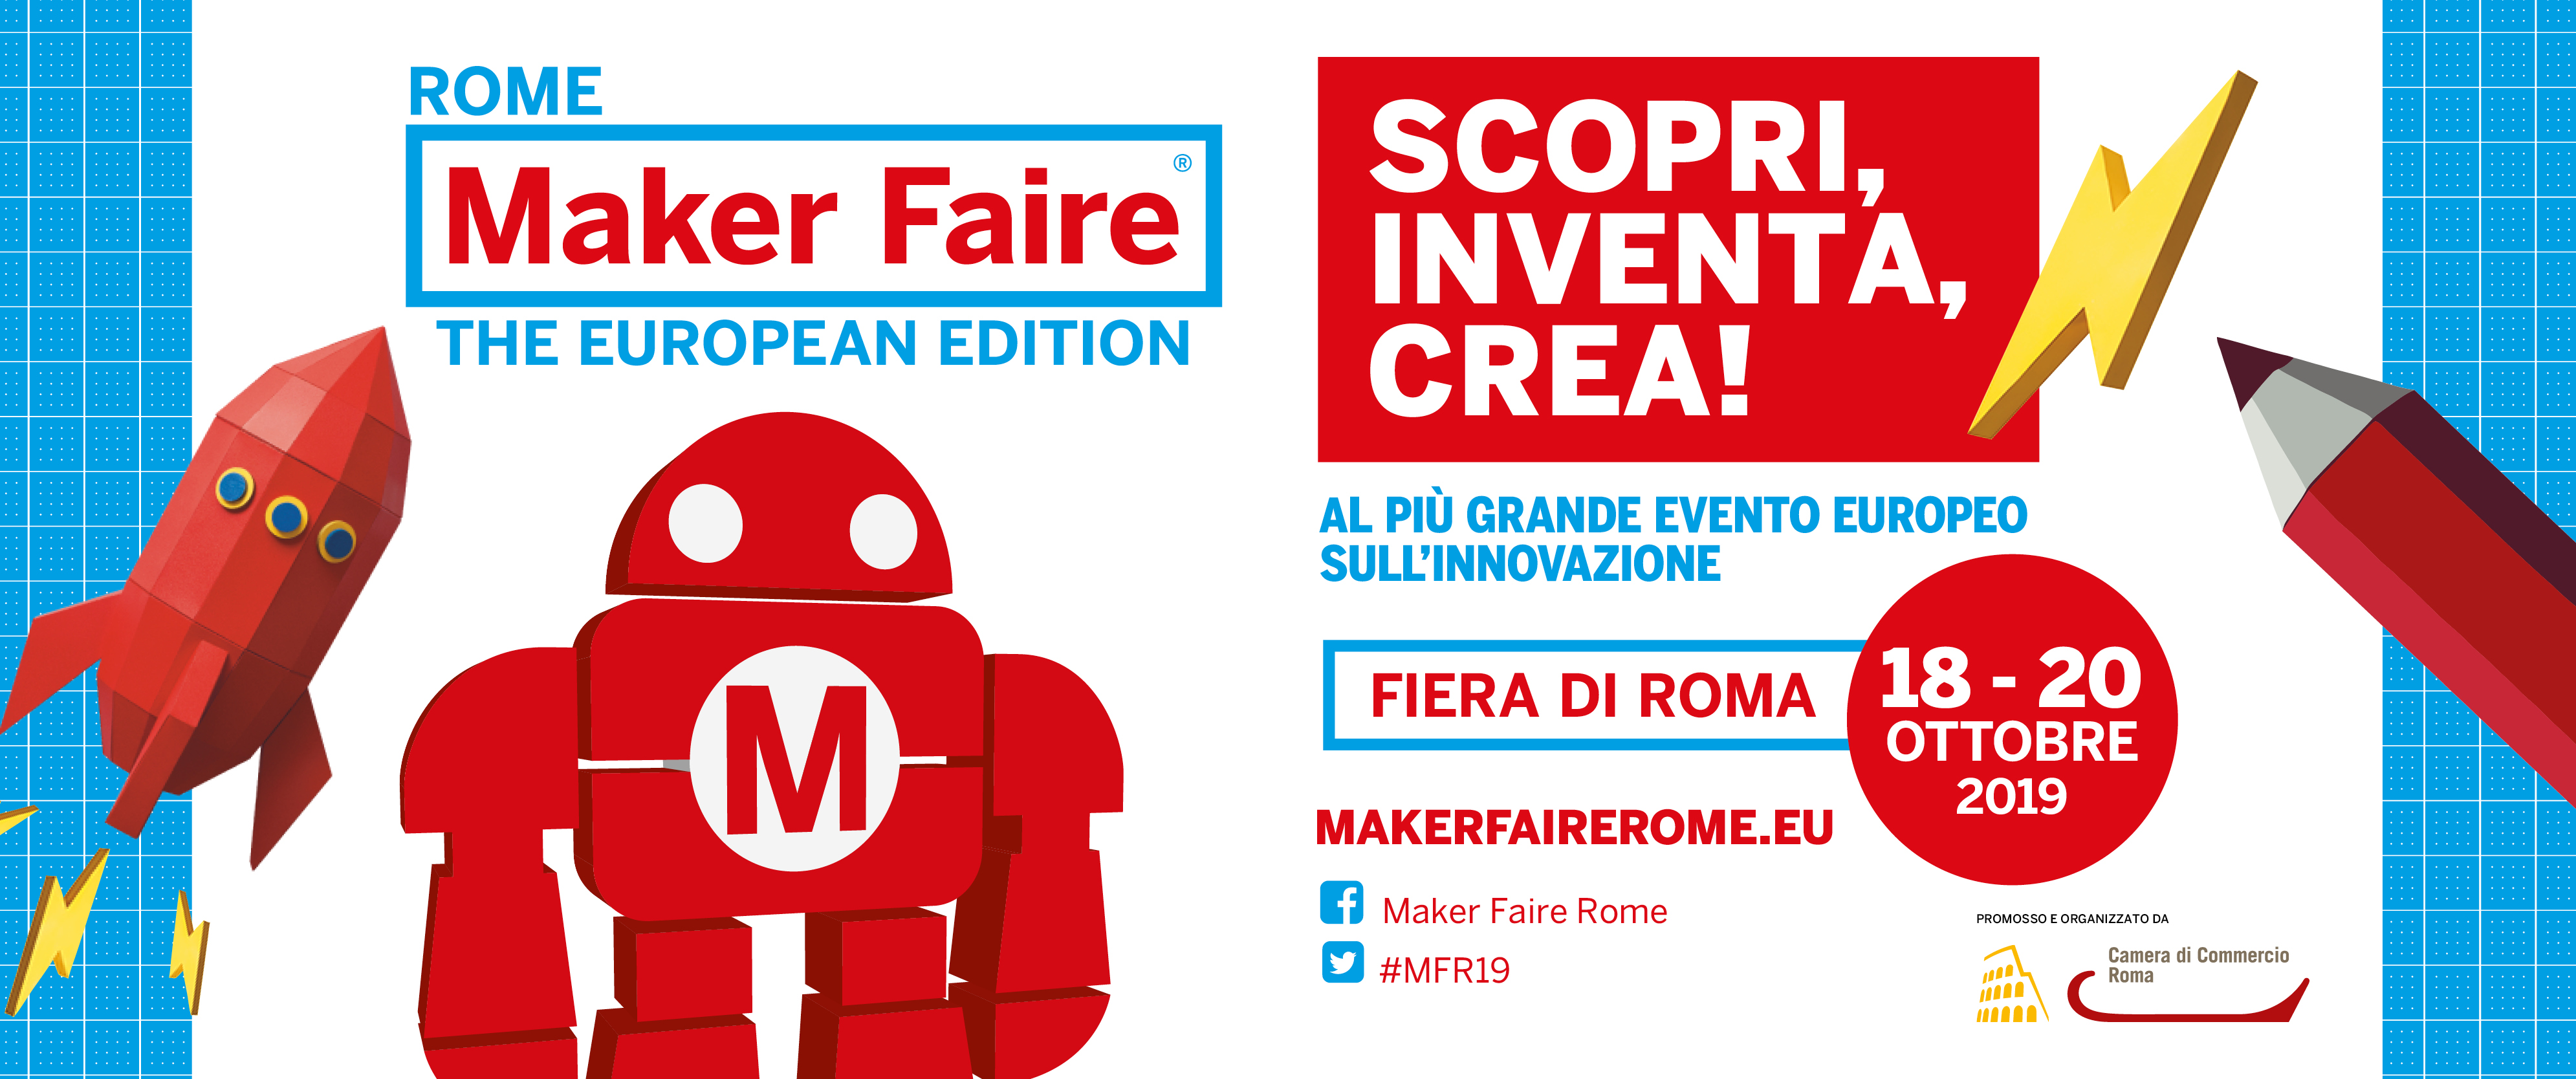 MAKER FAIRE ROMA, UN EVENTO IMPERDIBILE! Maker Faire Rome